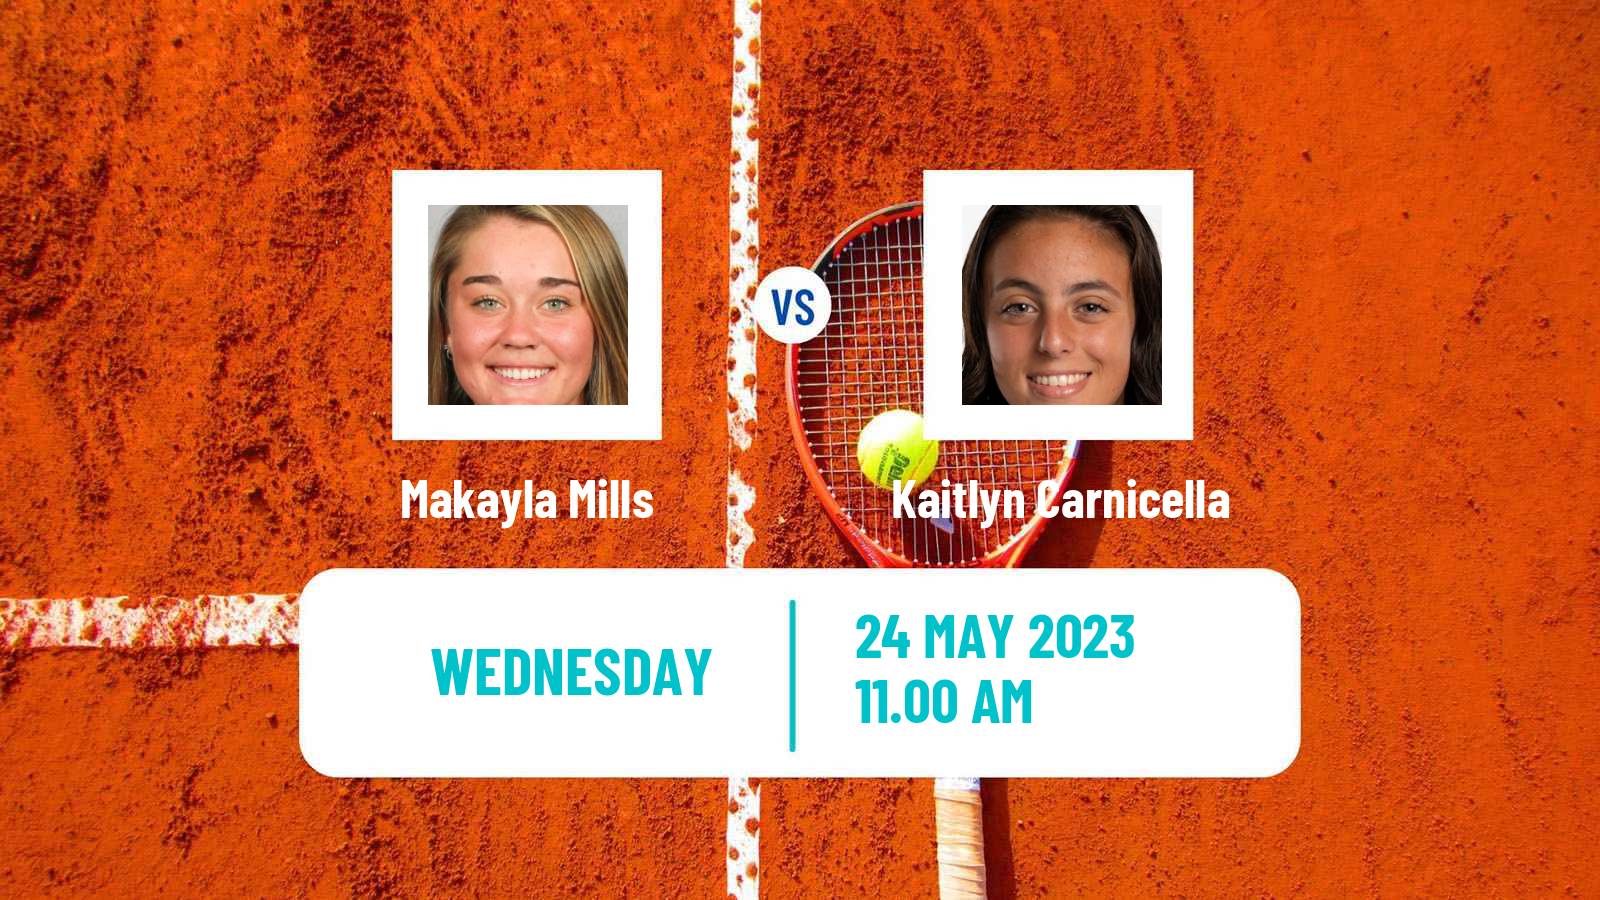 Tennis ITF W15 Huntsville Al Women Makayla Mills - Kaitlyn Carnicella